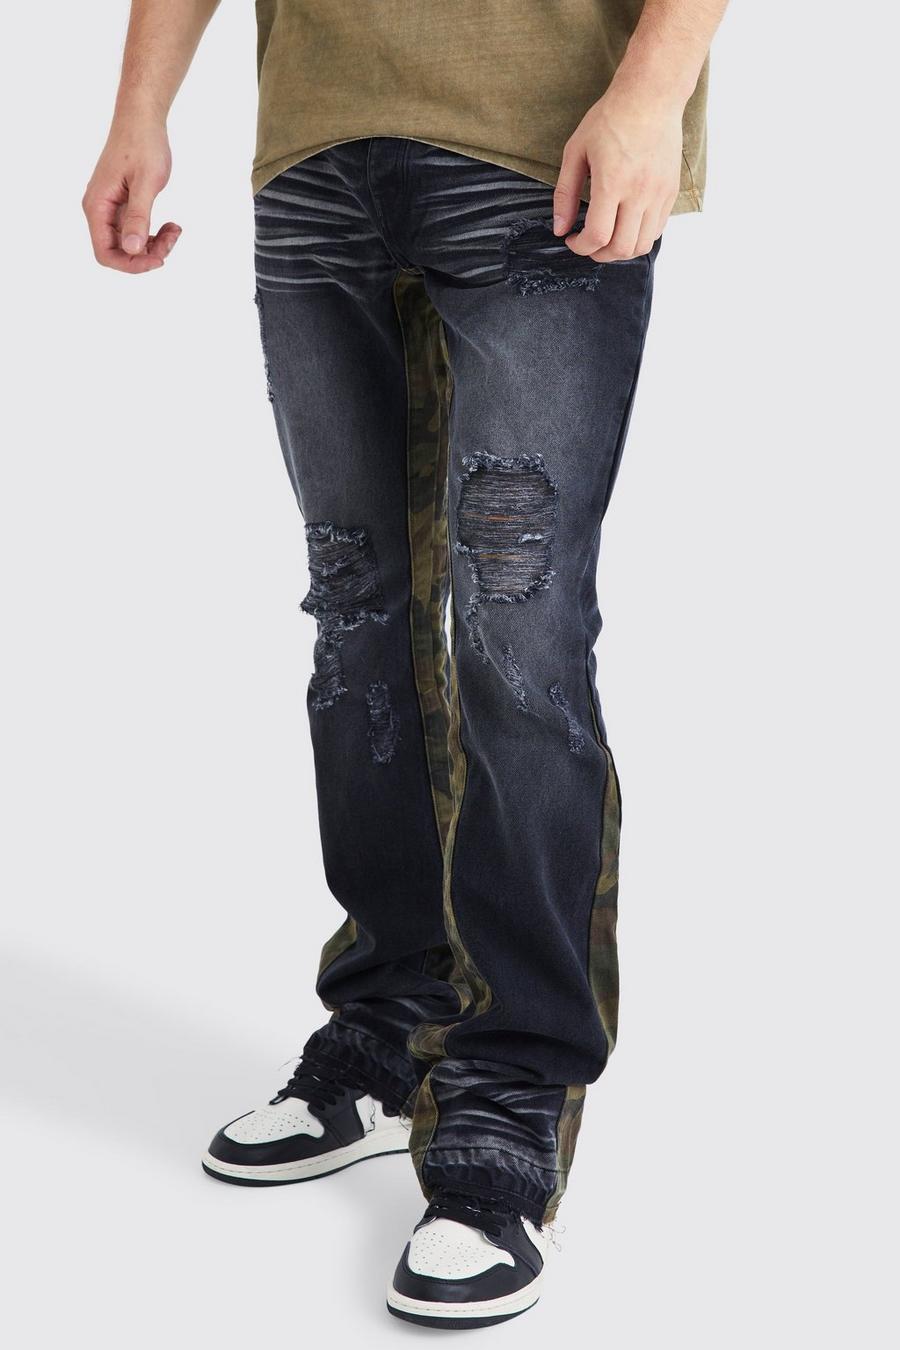 Jeans Tall Slim Fit in denim rigido a zampa con inserti a contrasto, Washed black